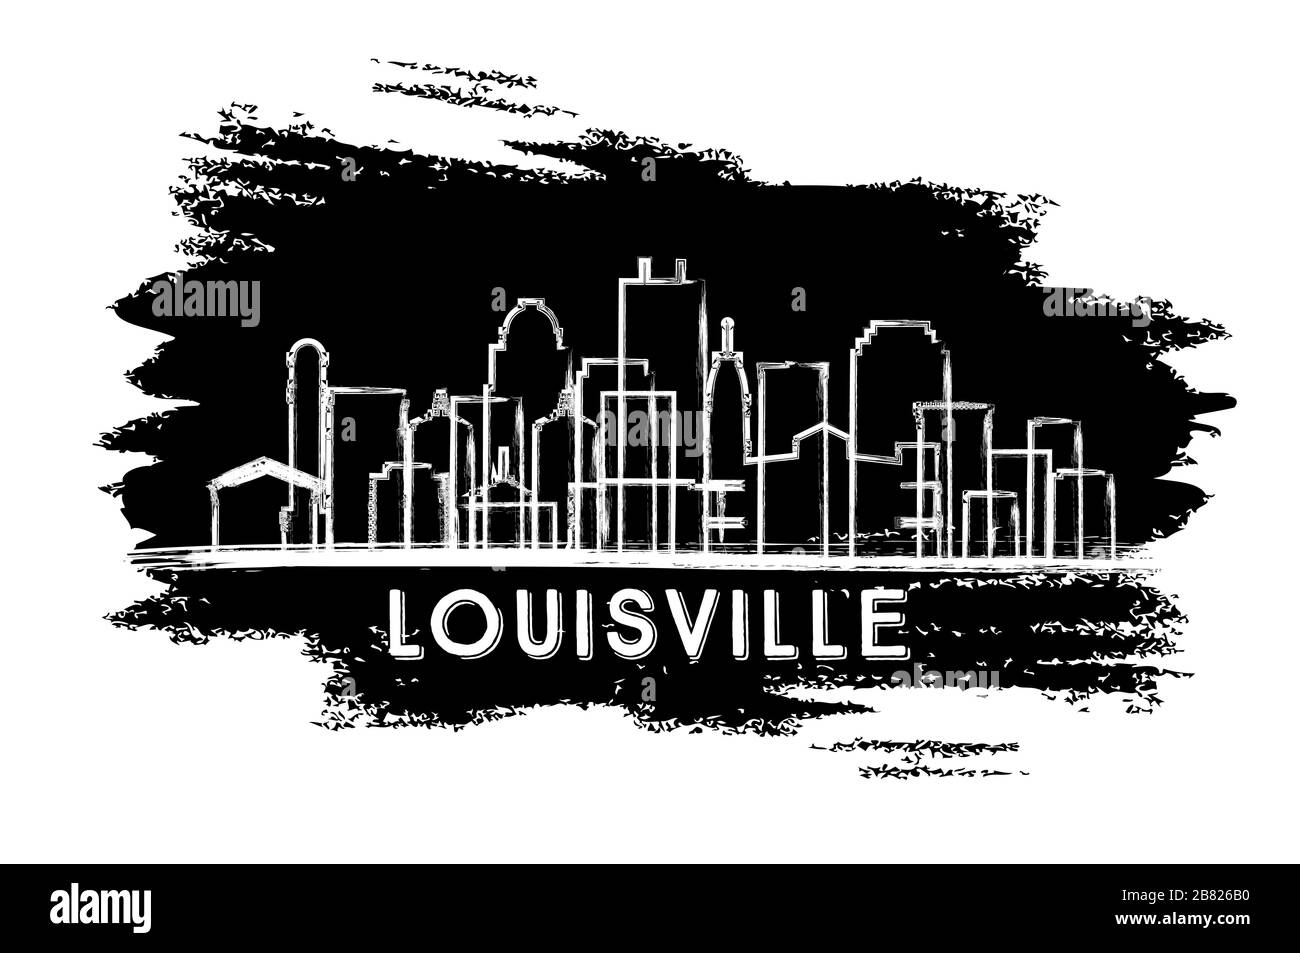 Louisville Kentucky USA City Skyline Silhouette. Schizzo disegnato a mano. Business Travel e Tourism Concept con architettura storica. Illustrazione Vettoriale